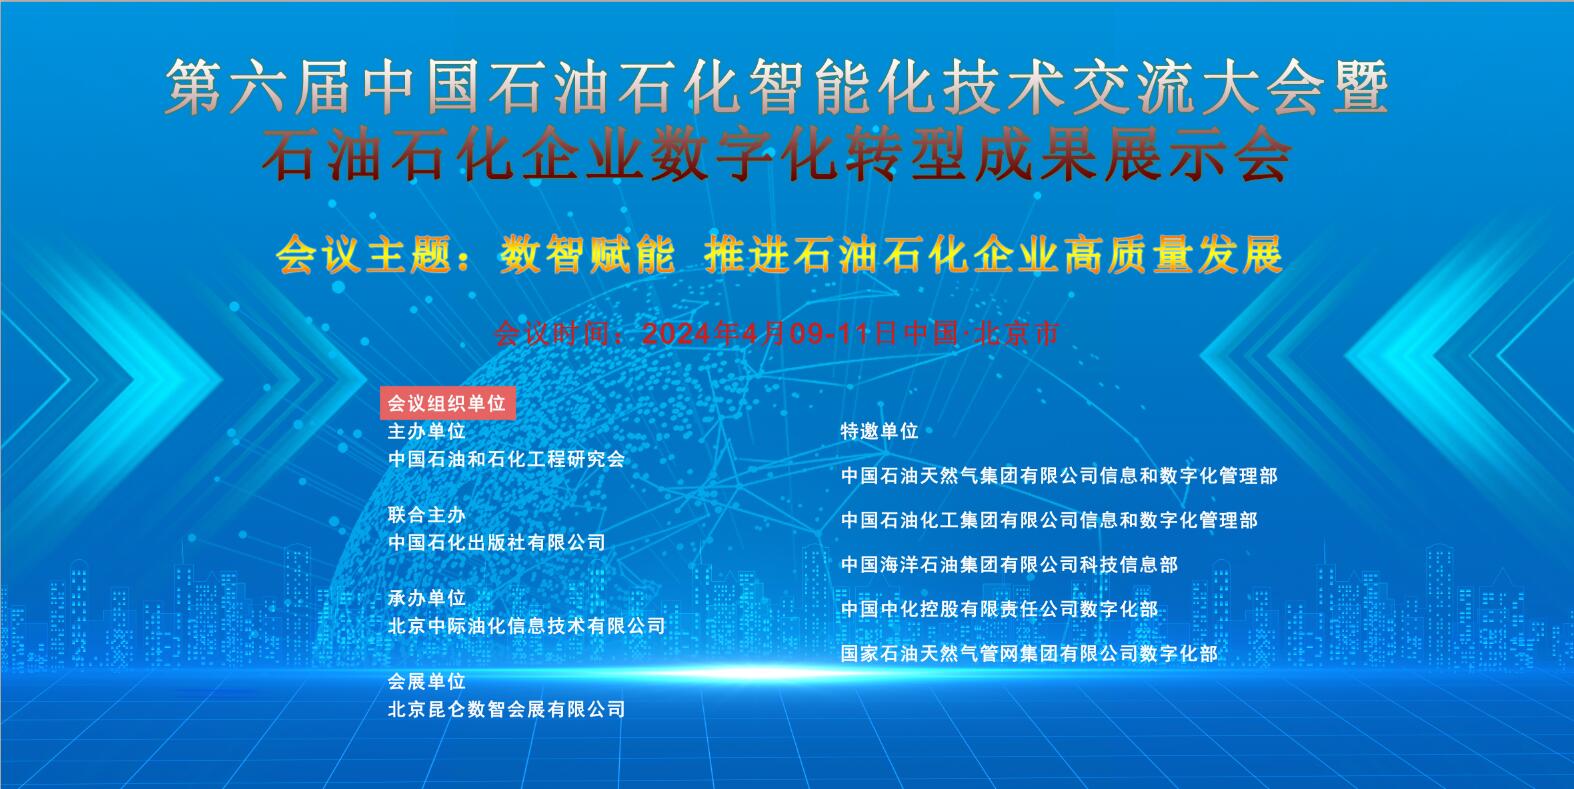 第六届中国石油石化智能化技术交流大会暨石油石化企业数字化转型成果展示会